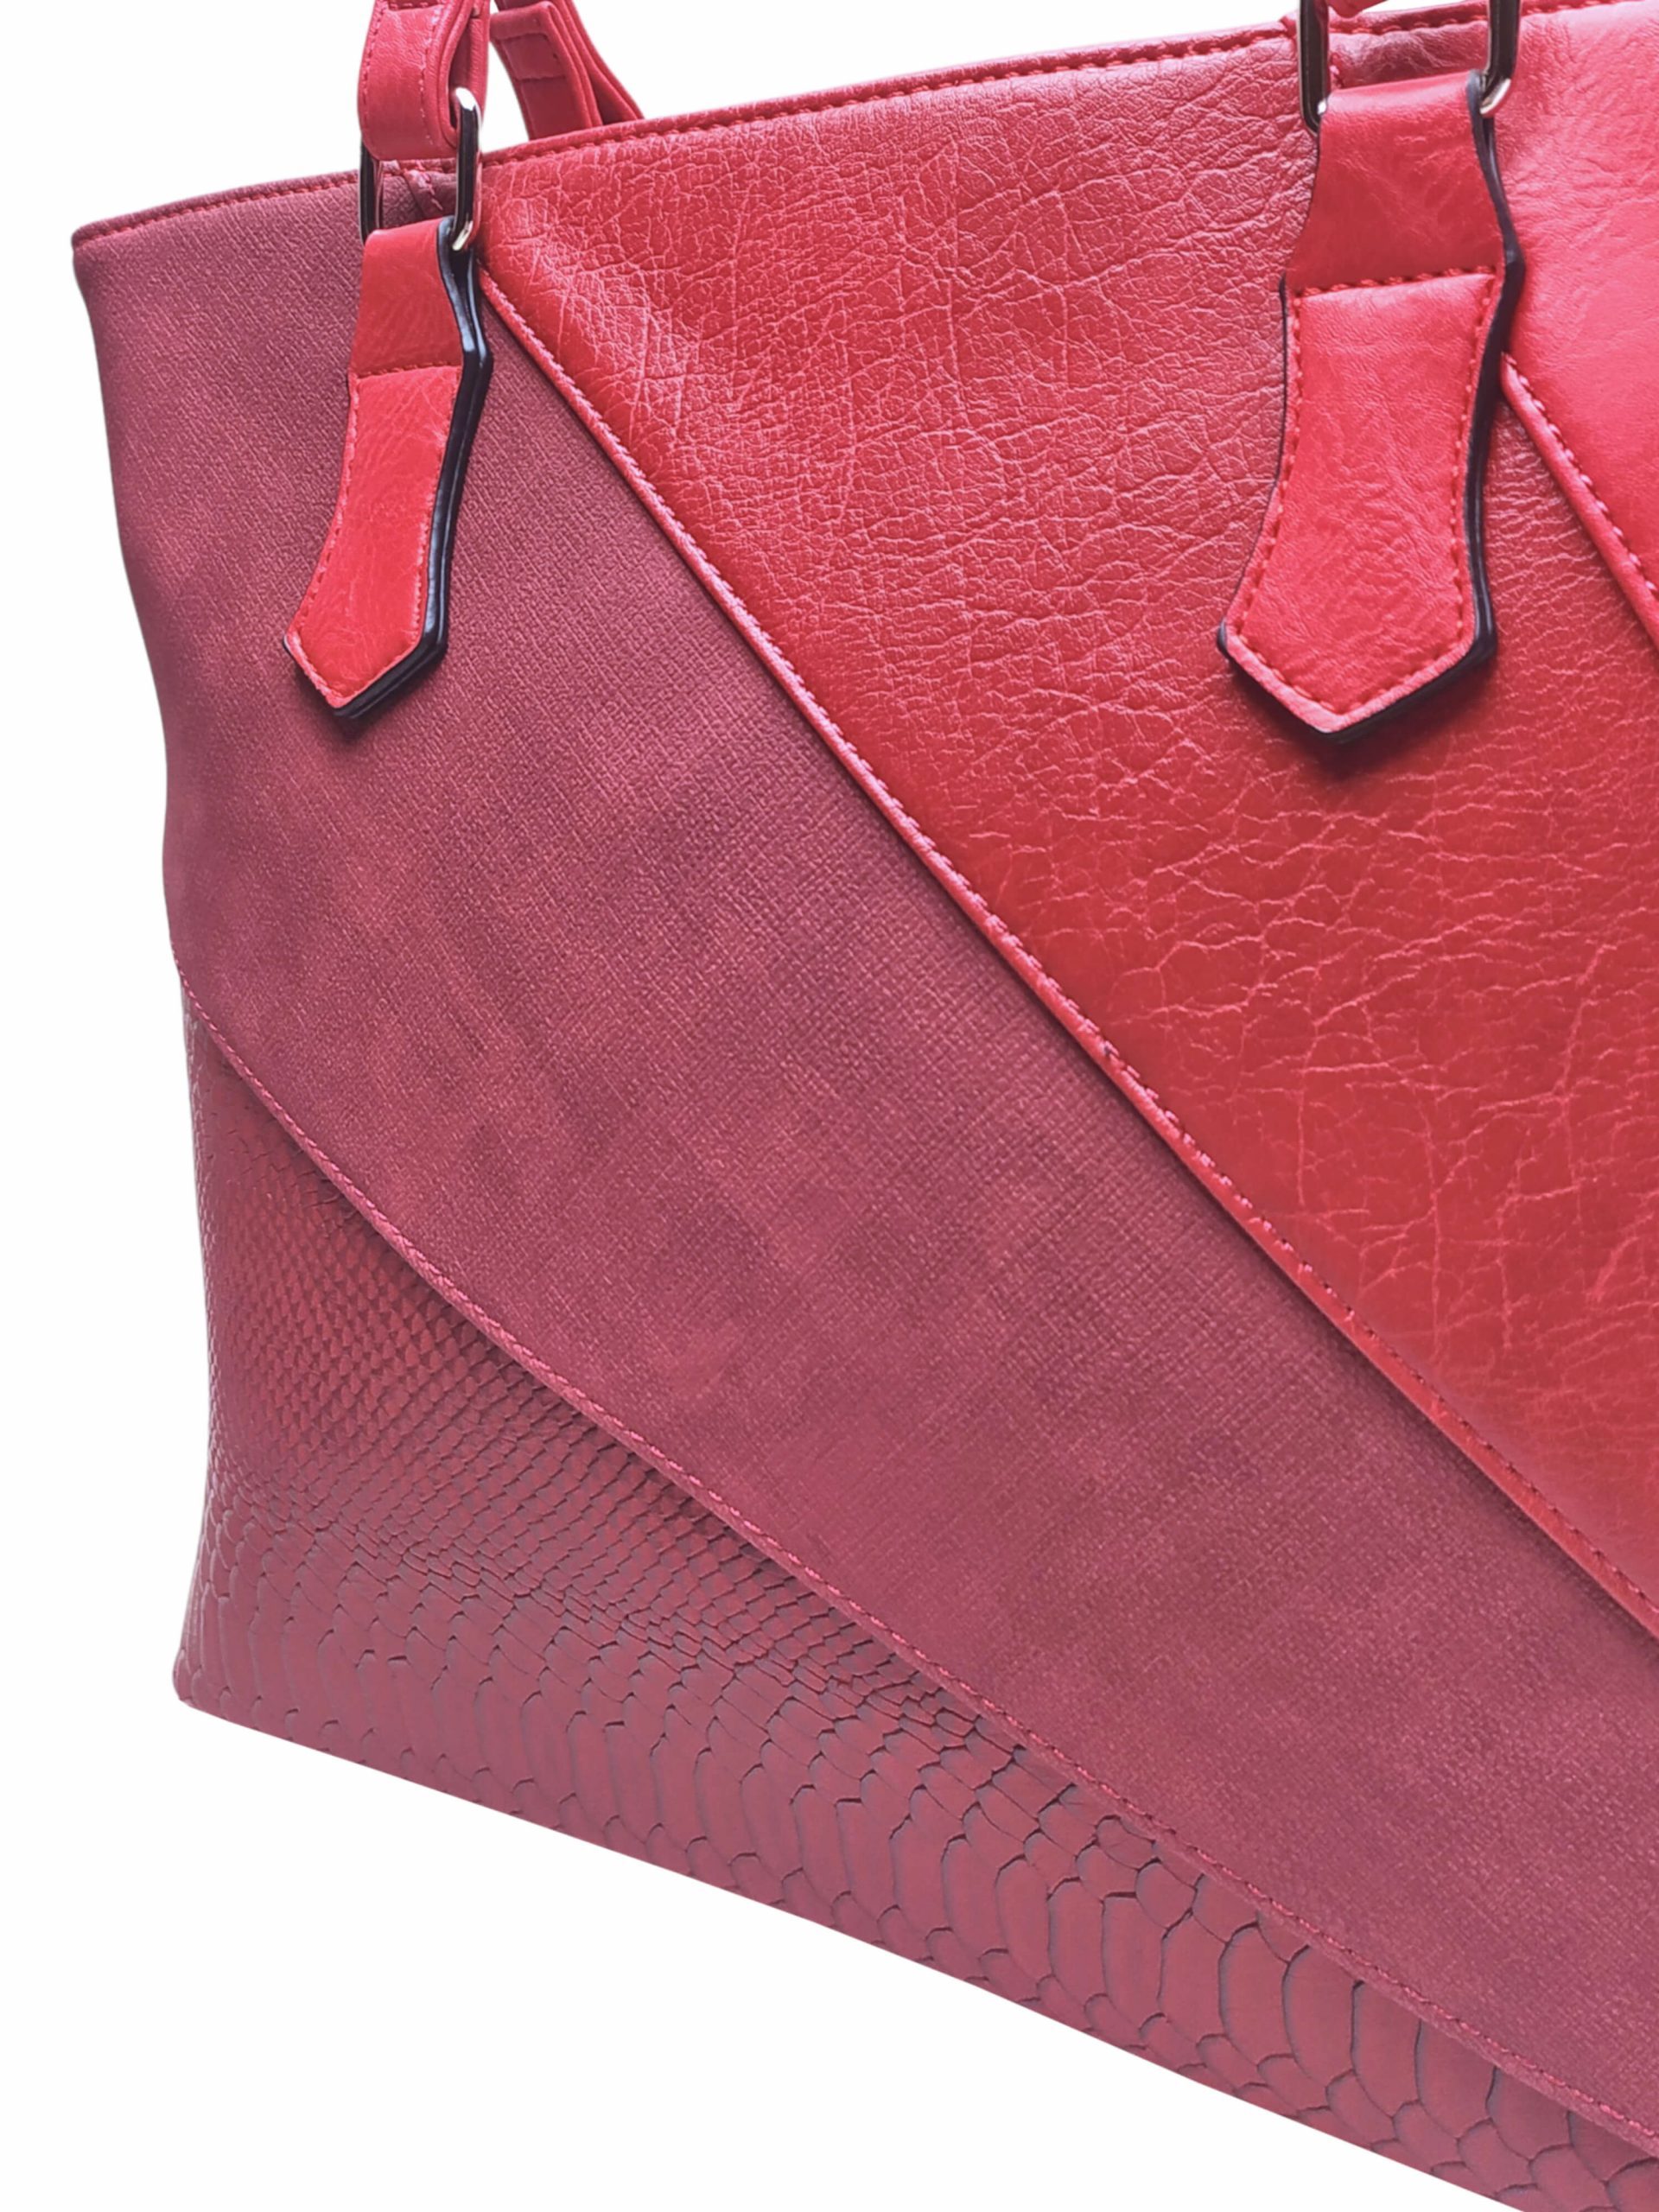 Tmavě červená dámská kabelka přes rameno se vzory, Tapple, H17224, detail kabelky přes rameno